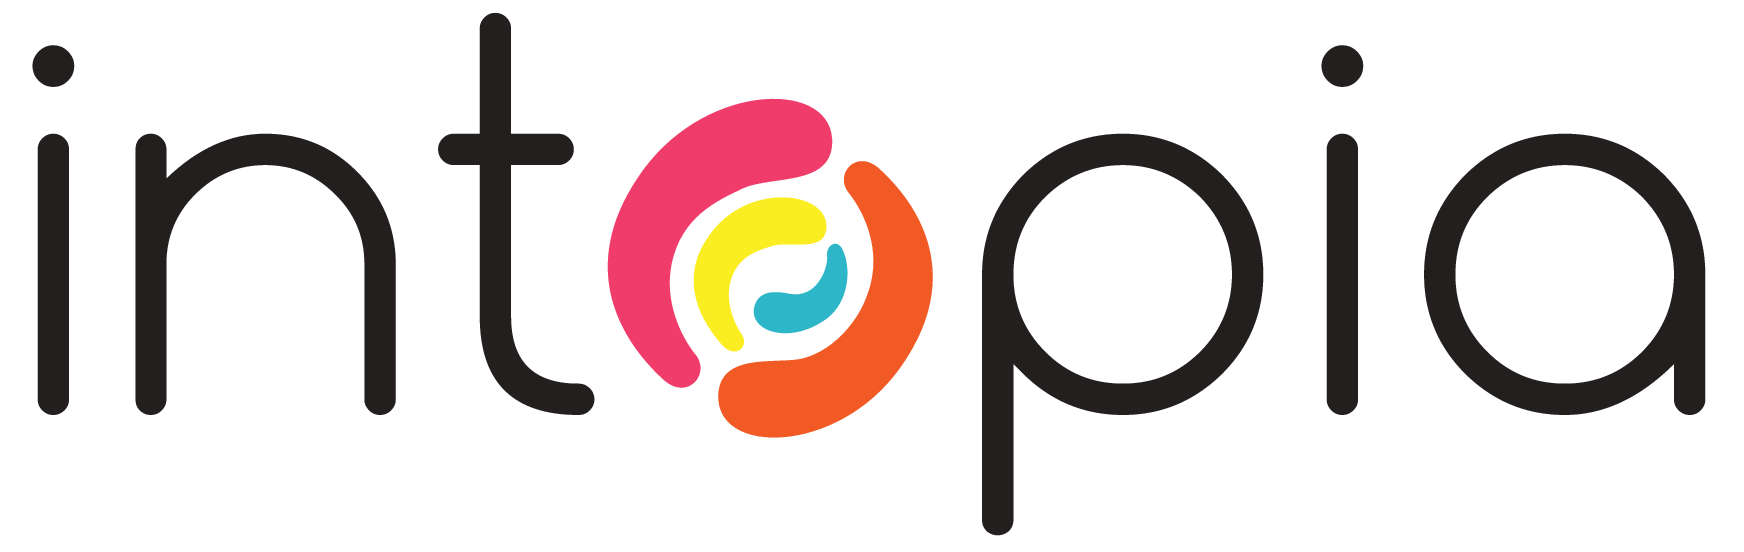 Intopia logo